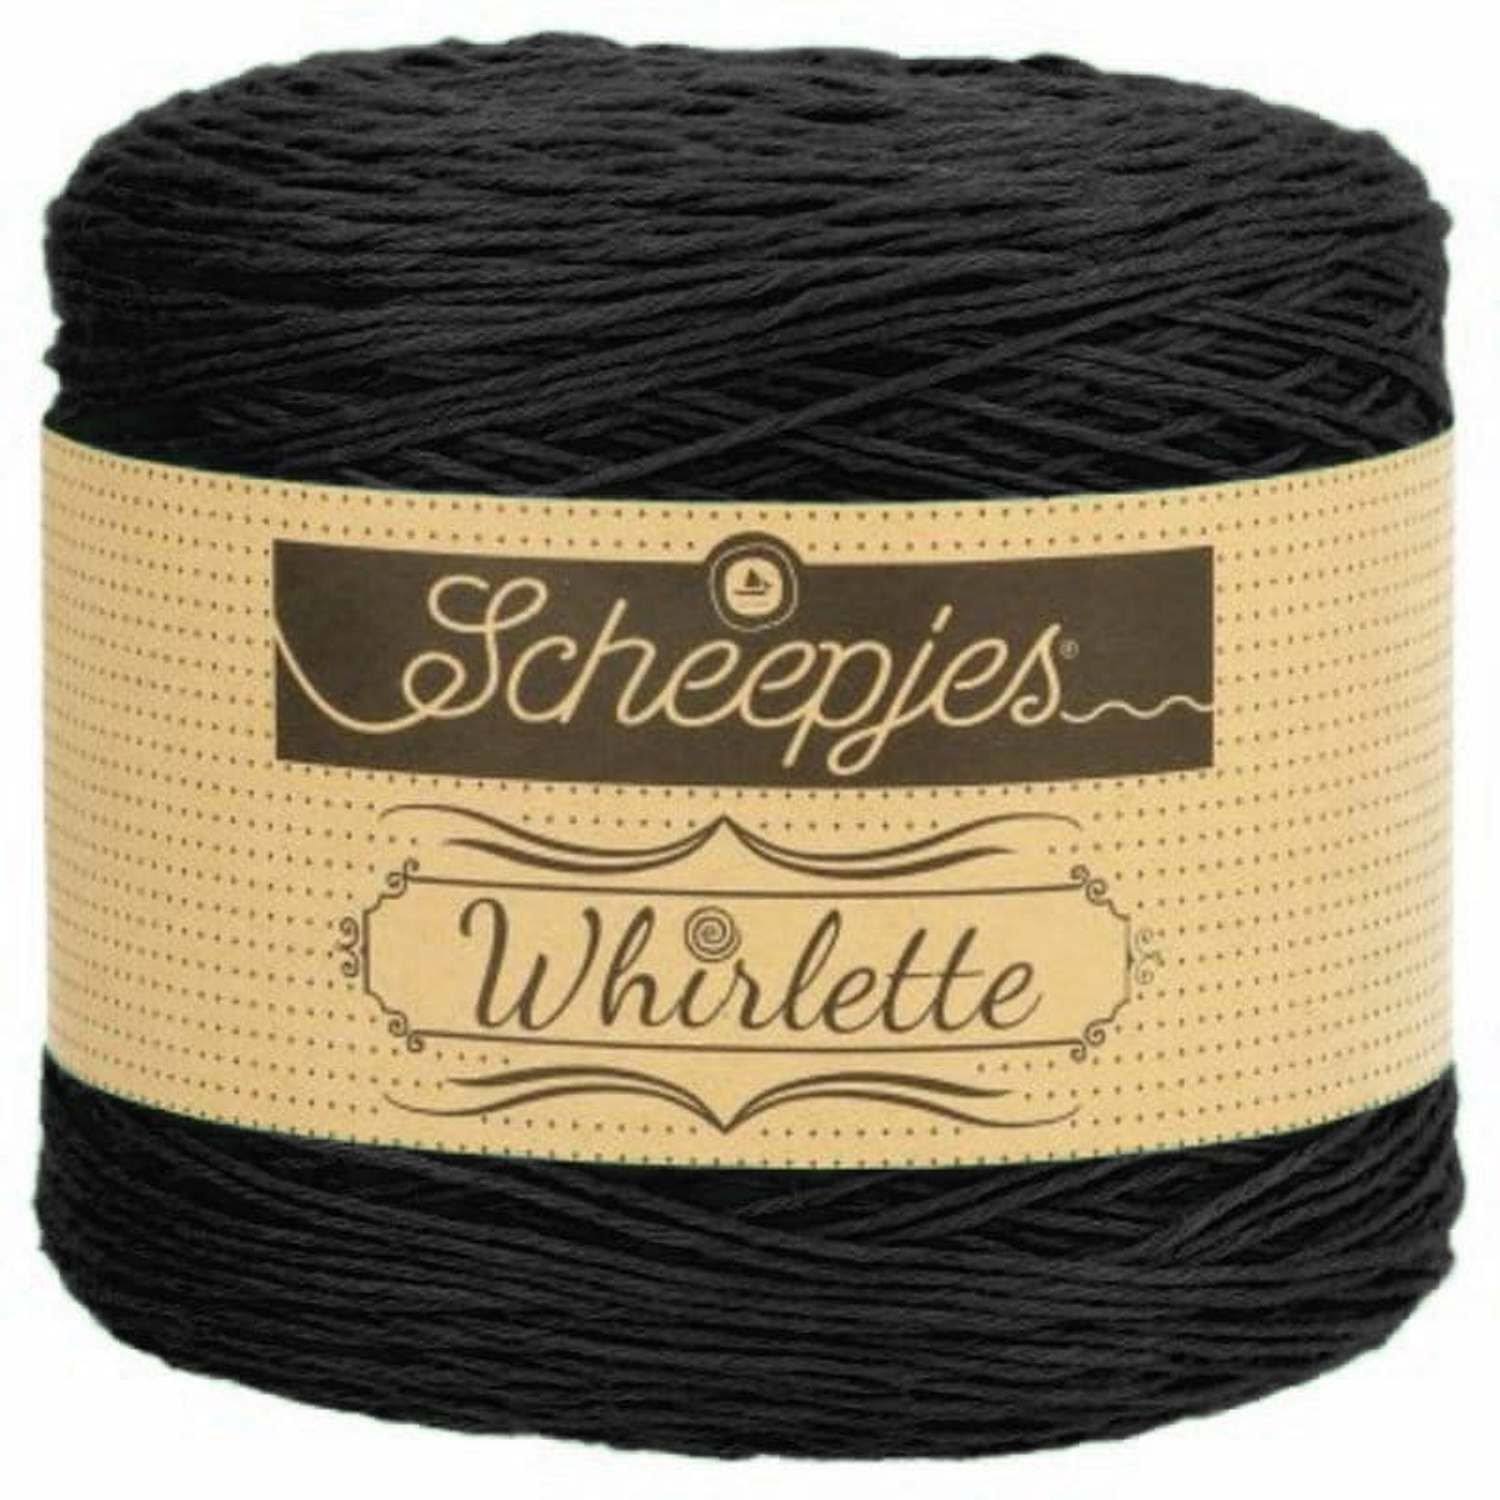 Scheepjes Whirlette Yarn - 851 Liquorice